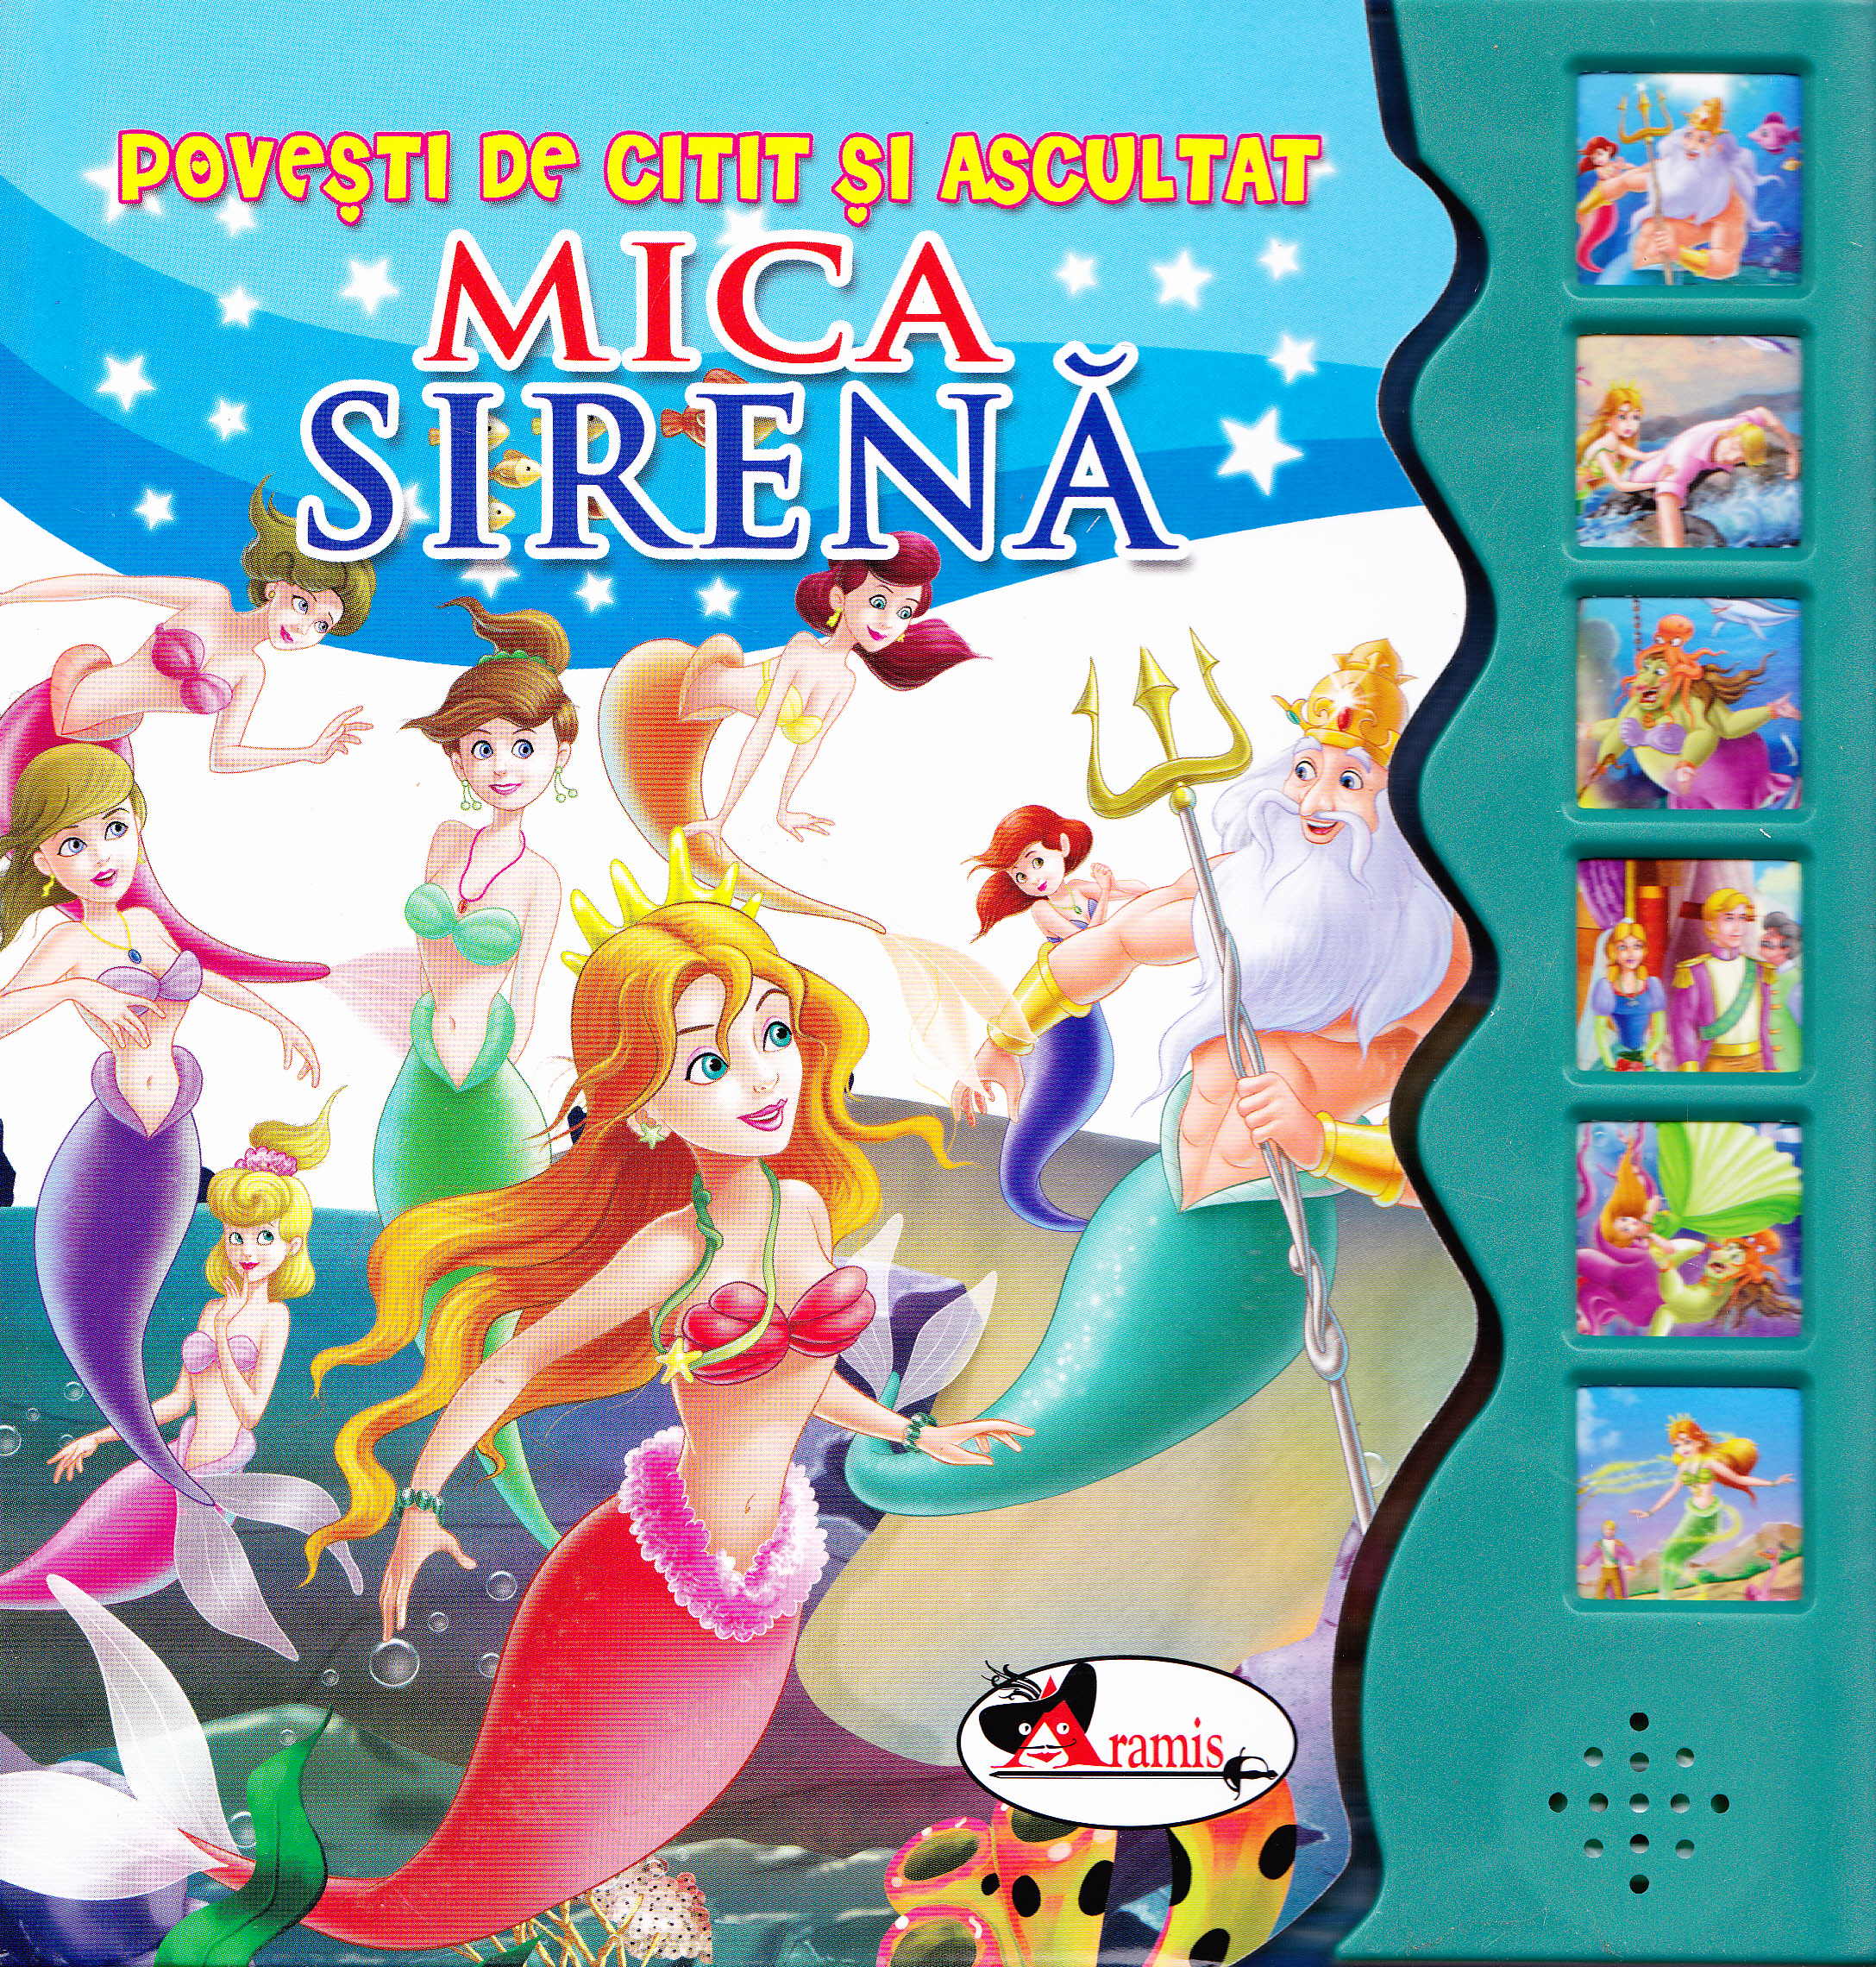 Mica Sirena - Povesti de citit si ascultat